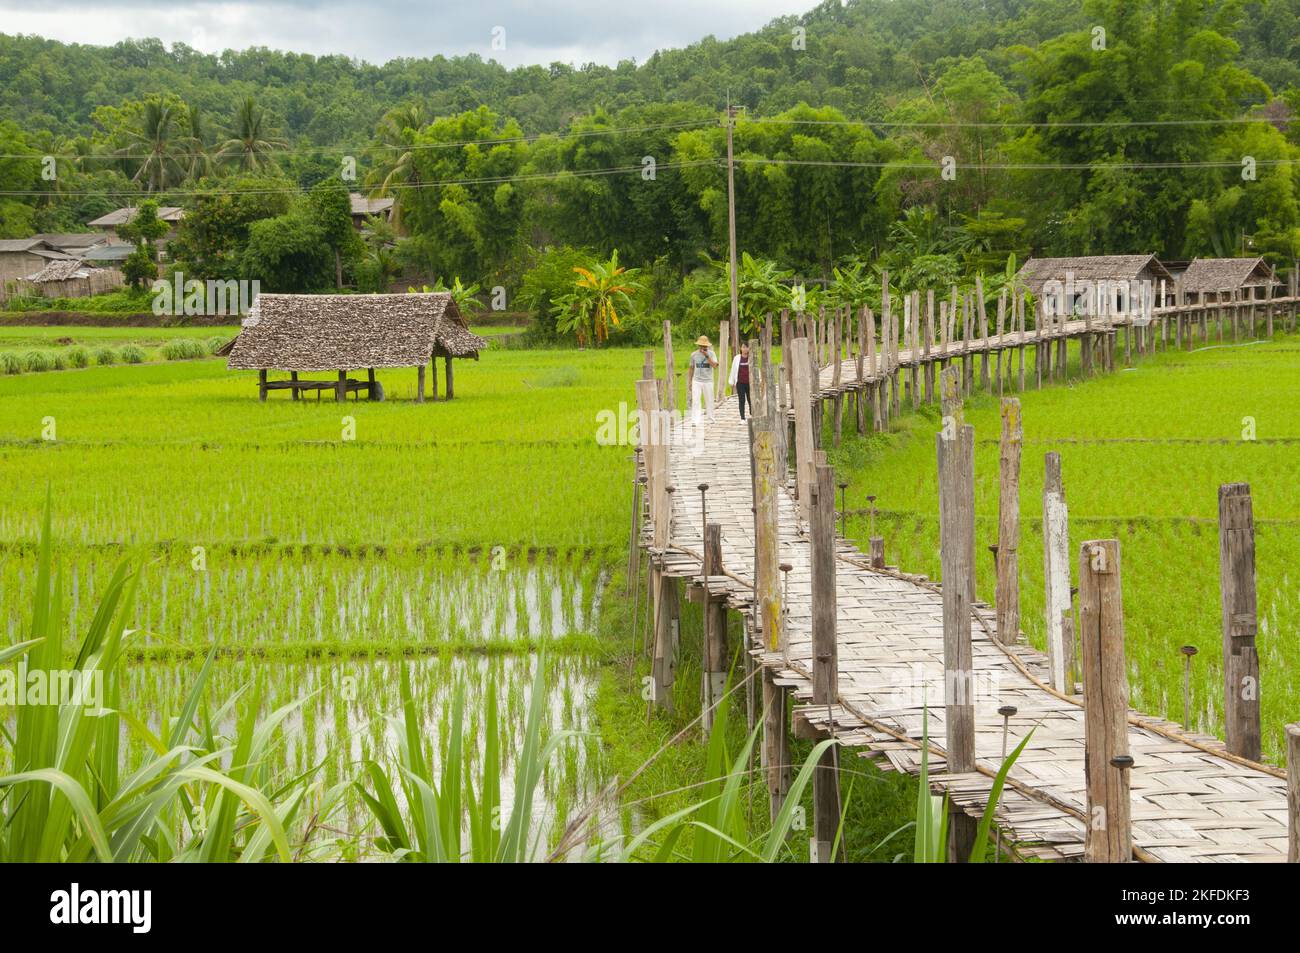 Tailandia: Arroz recién plantado en los campos junto al puente de bambú Su Tong Pae, Wat Phu Sama, Mae Hong Son. El puente de bambú se extiende a lo largo de 500 metros sobre el arroyo Mae Sa Nga y los campos de arroz. El puente permite el acceso de los monjes desde Wat Phu Sama hasta el pequeño pueblo al oeste. Foto de stock